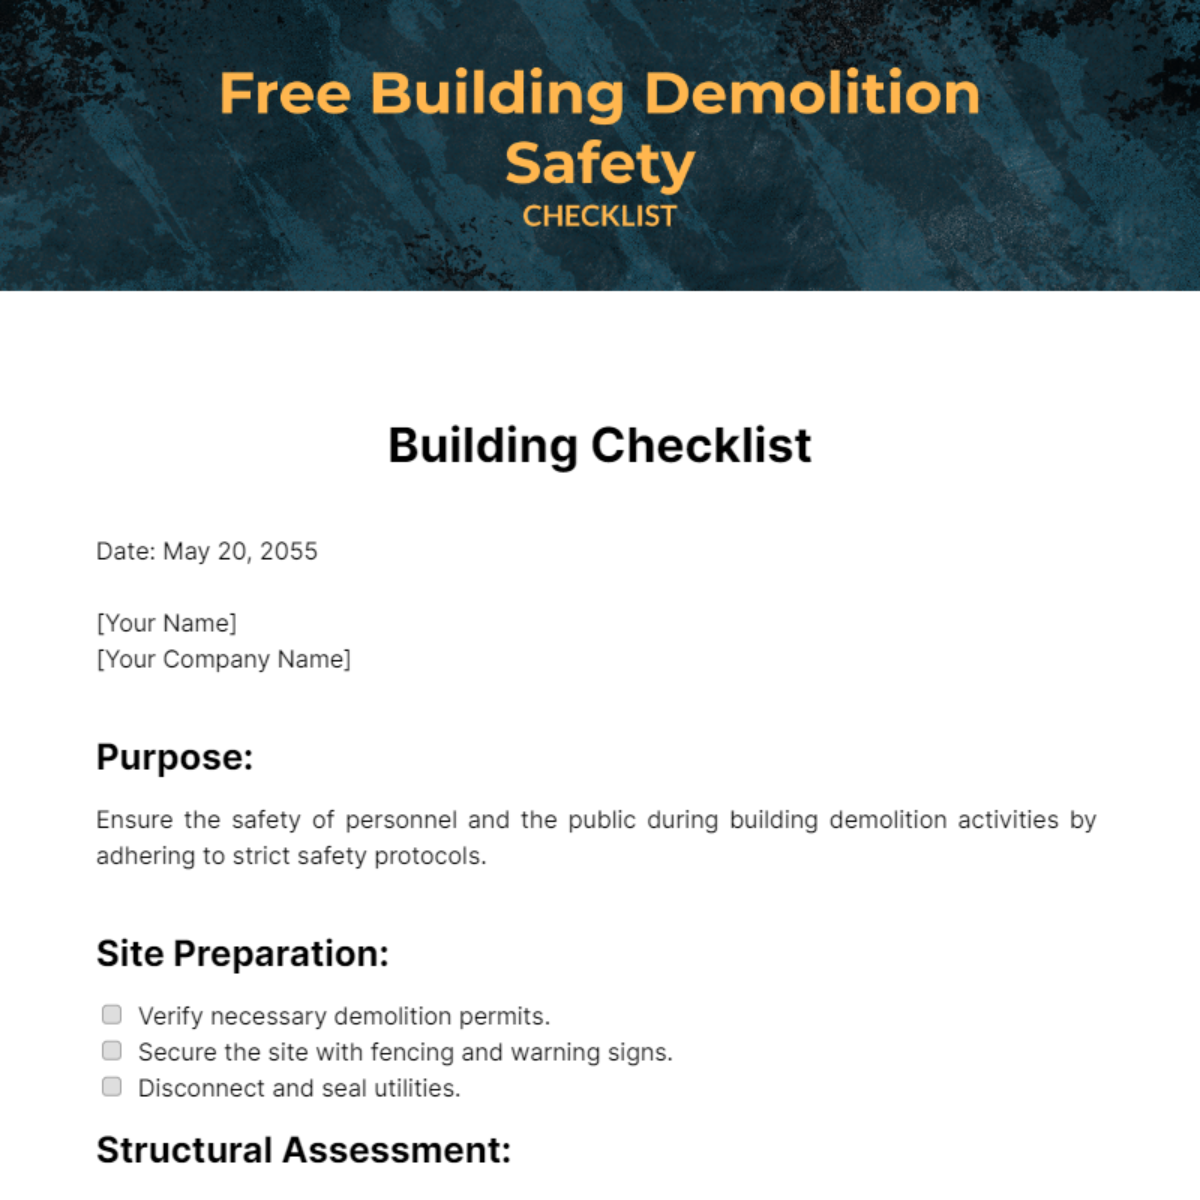 Building Demolition Safety Checklist Template